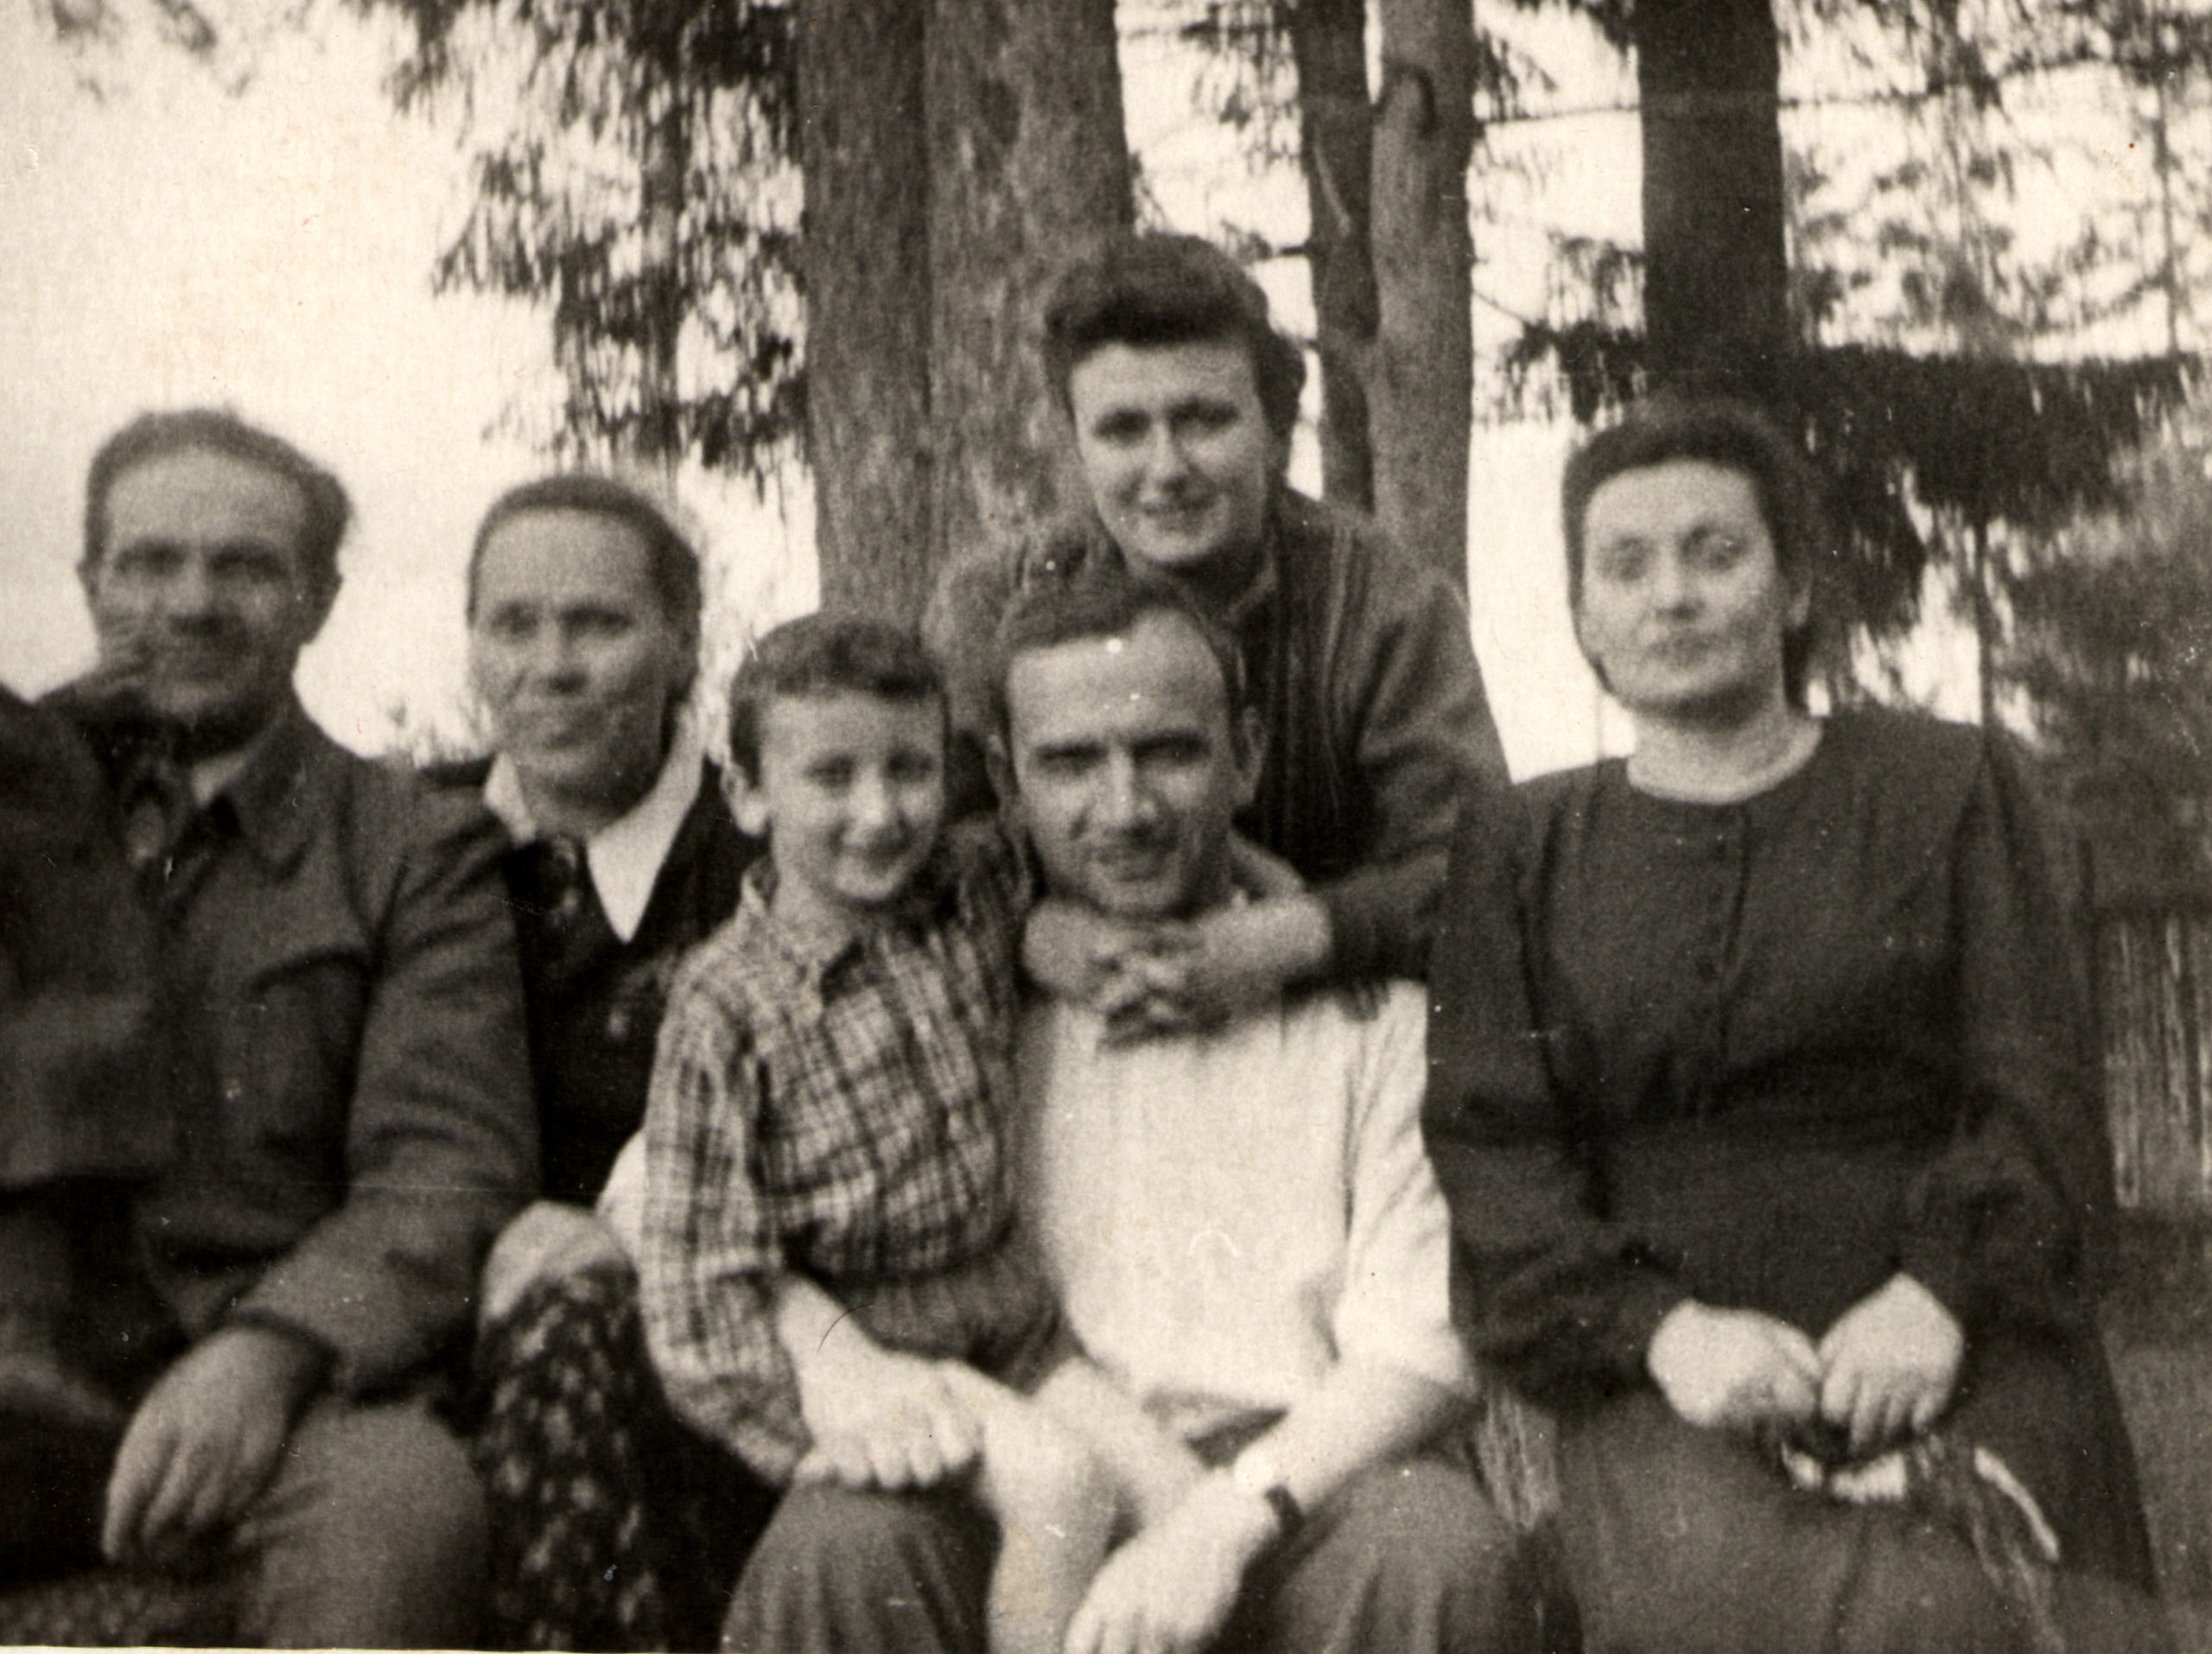 Berta Zelbert with her family